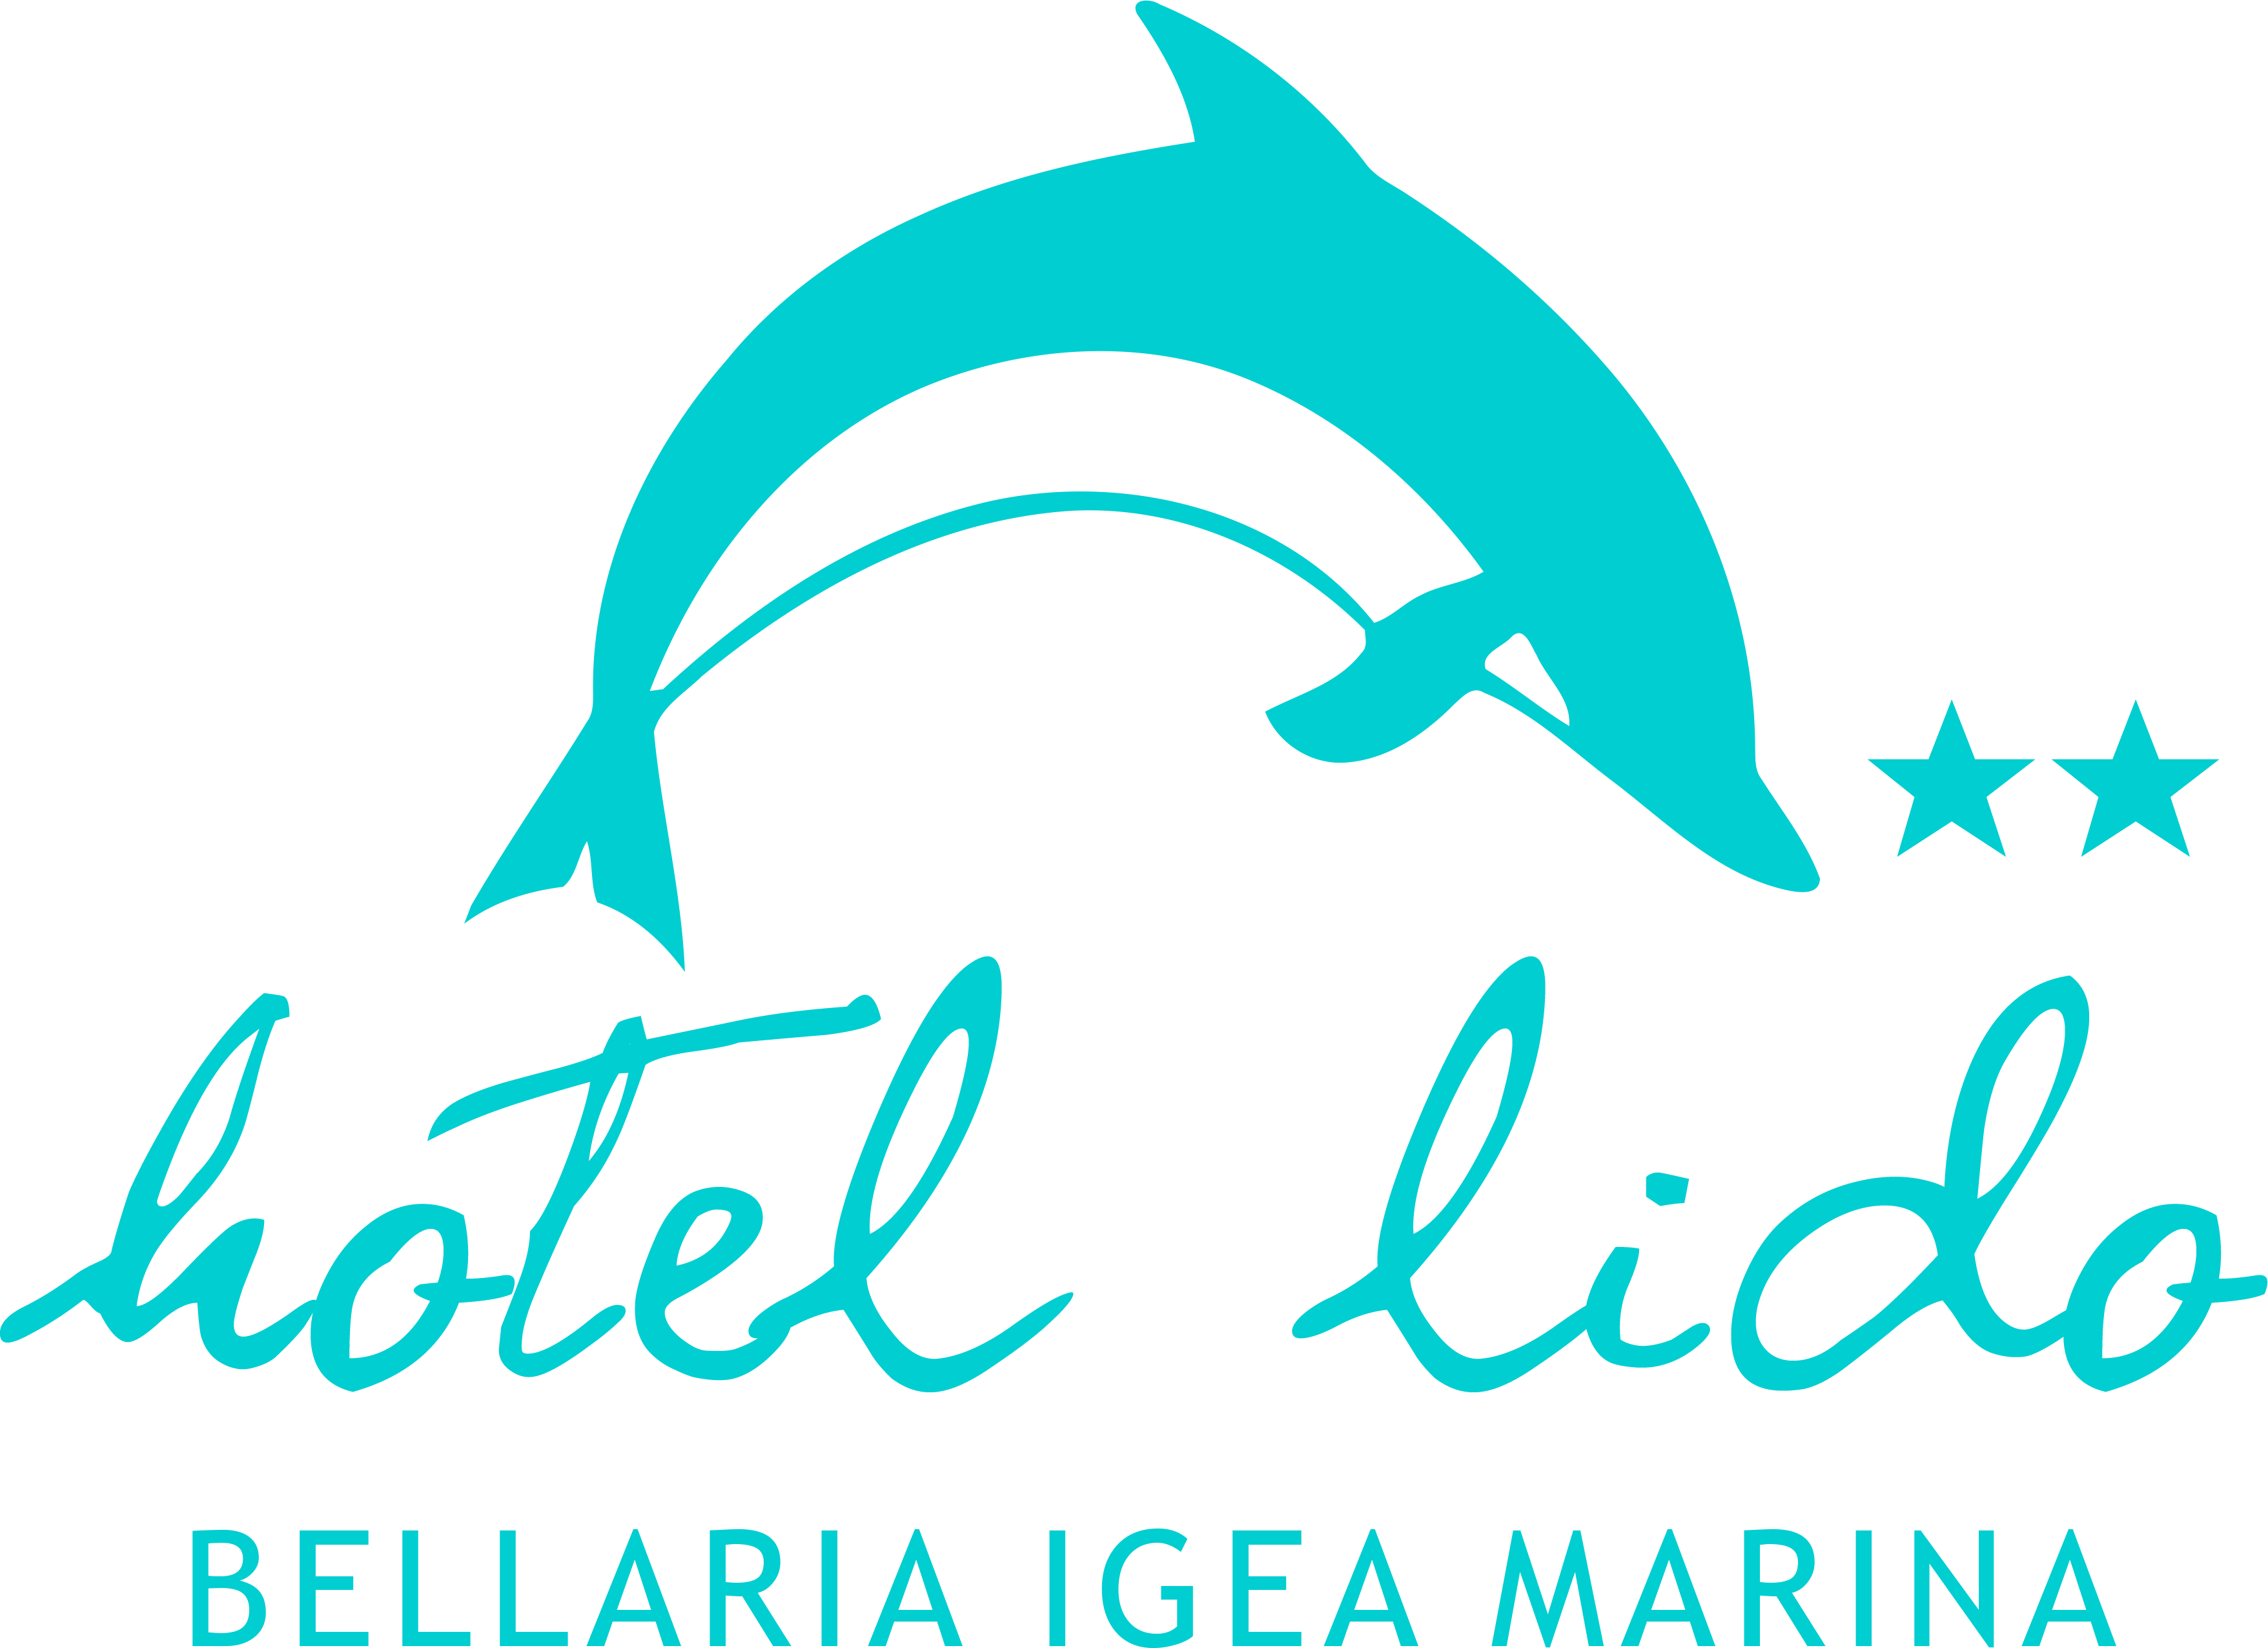 Hotel Lido | Hotel 2 stelle a Bellaria Igea Marina